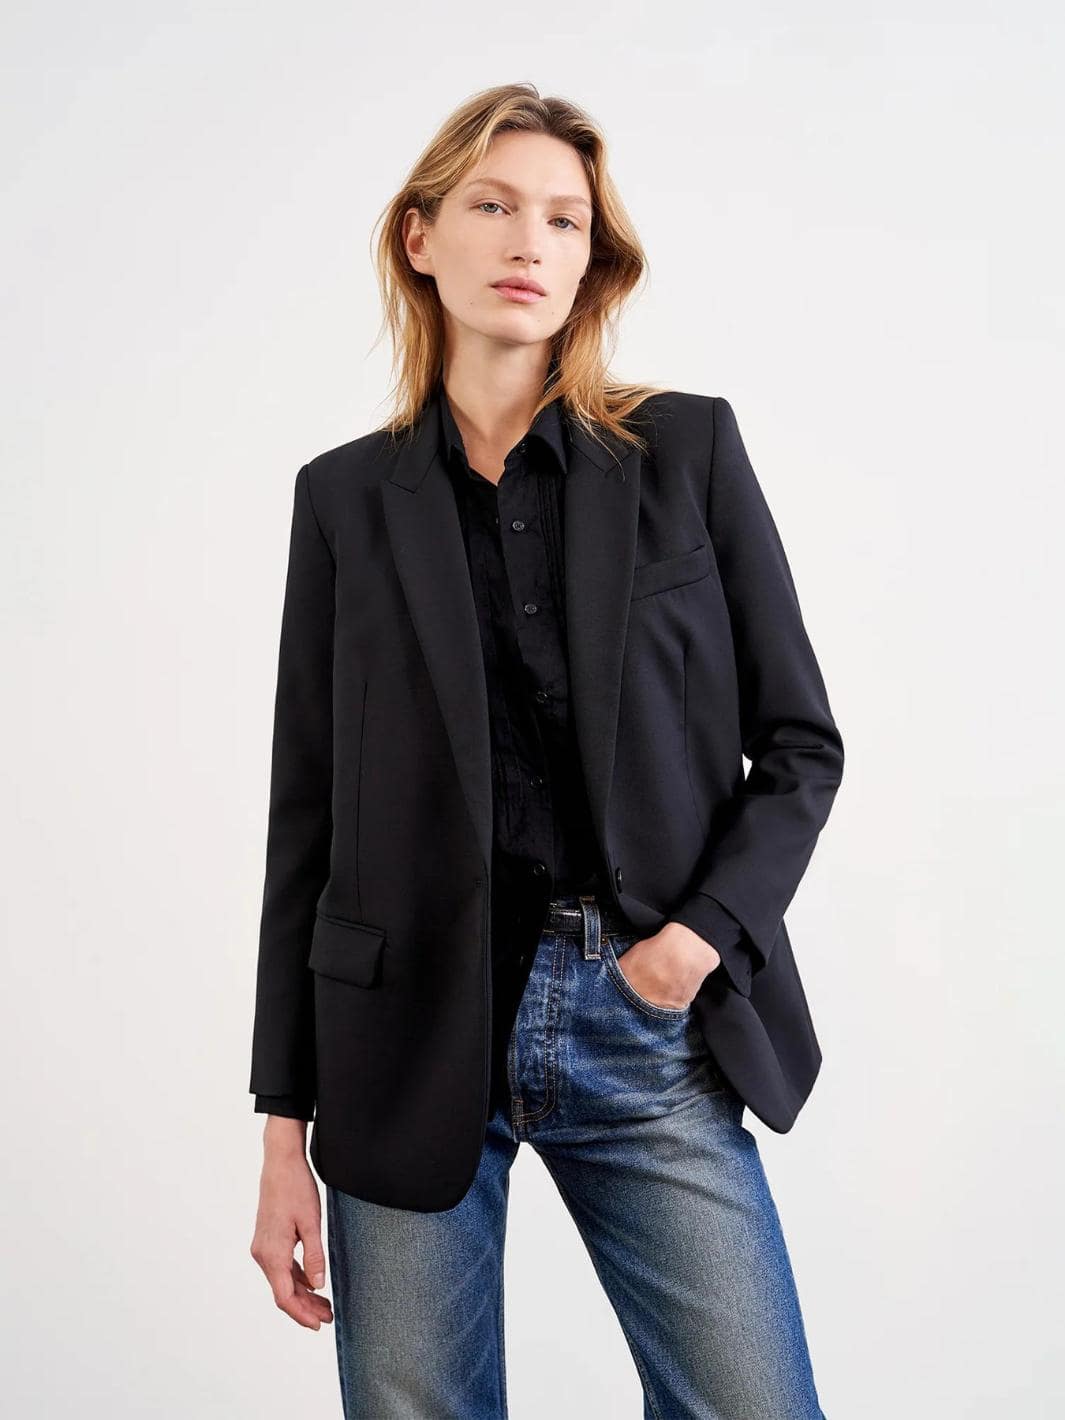 Nili Lotan Suit Jackets Blazer | Diana Blazer